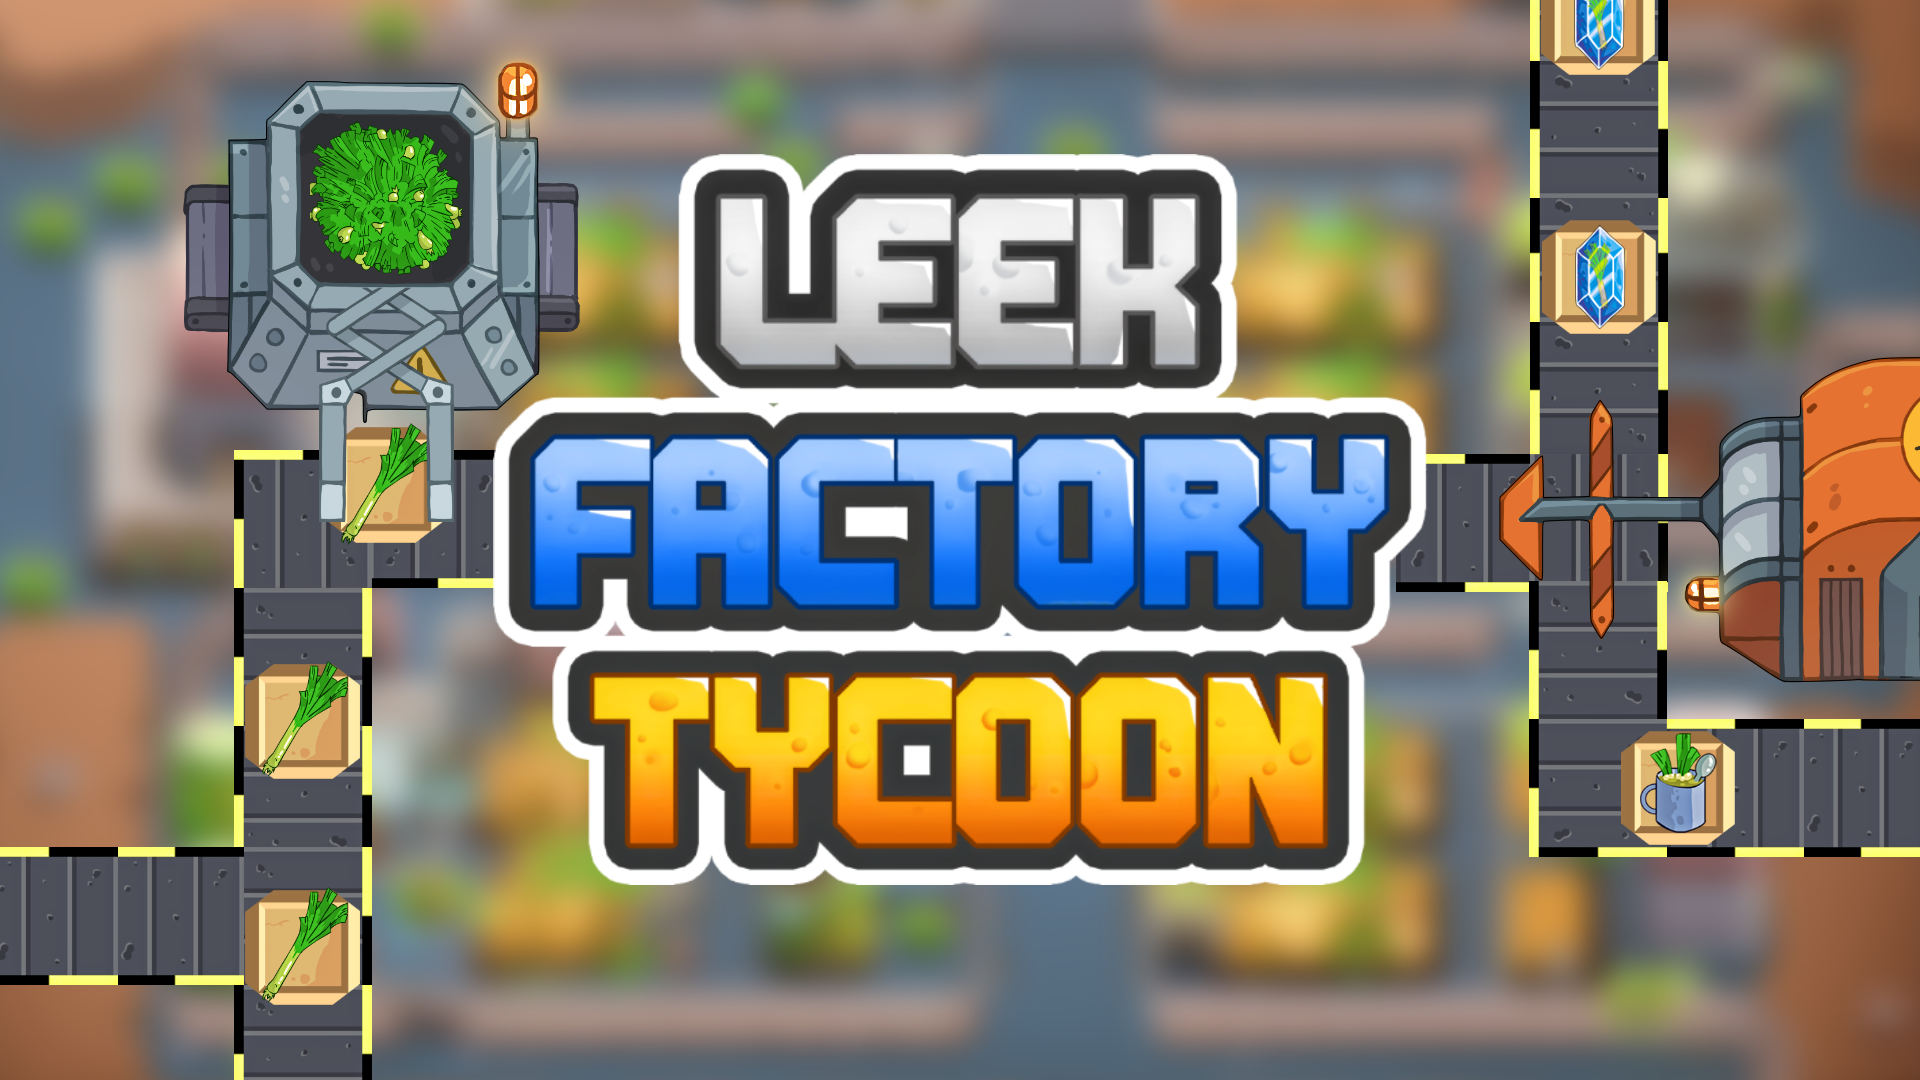 Leek Factory Tycoon Game Image